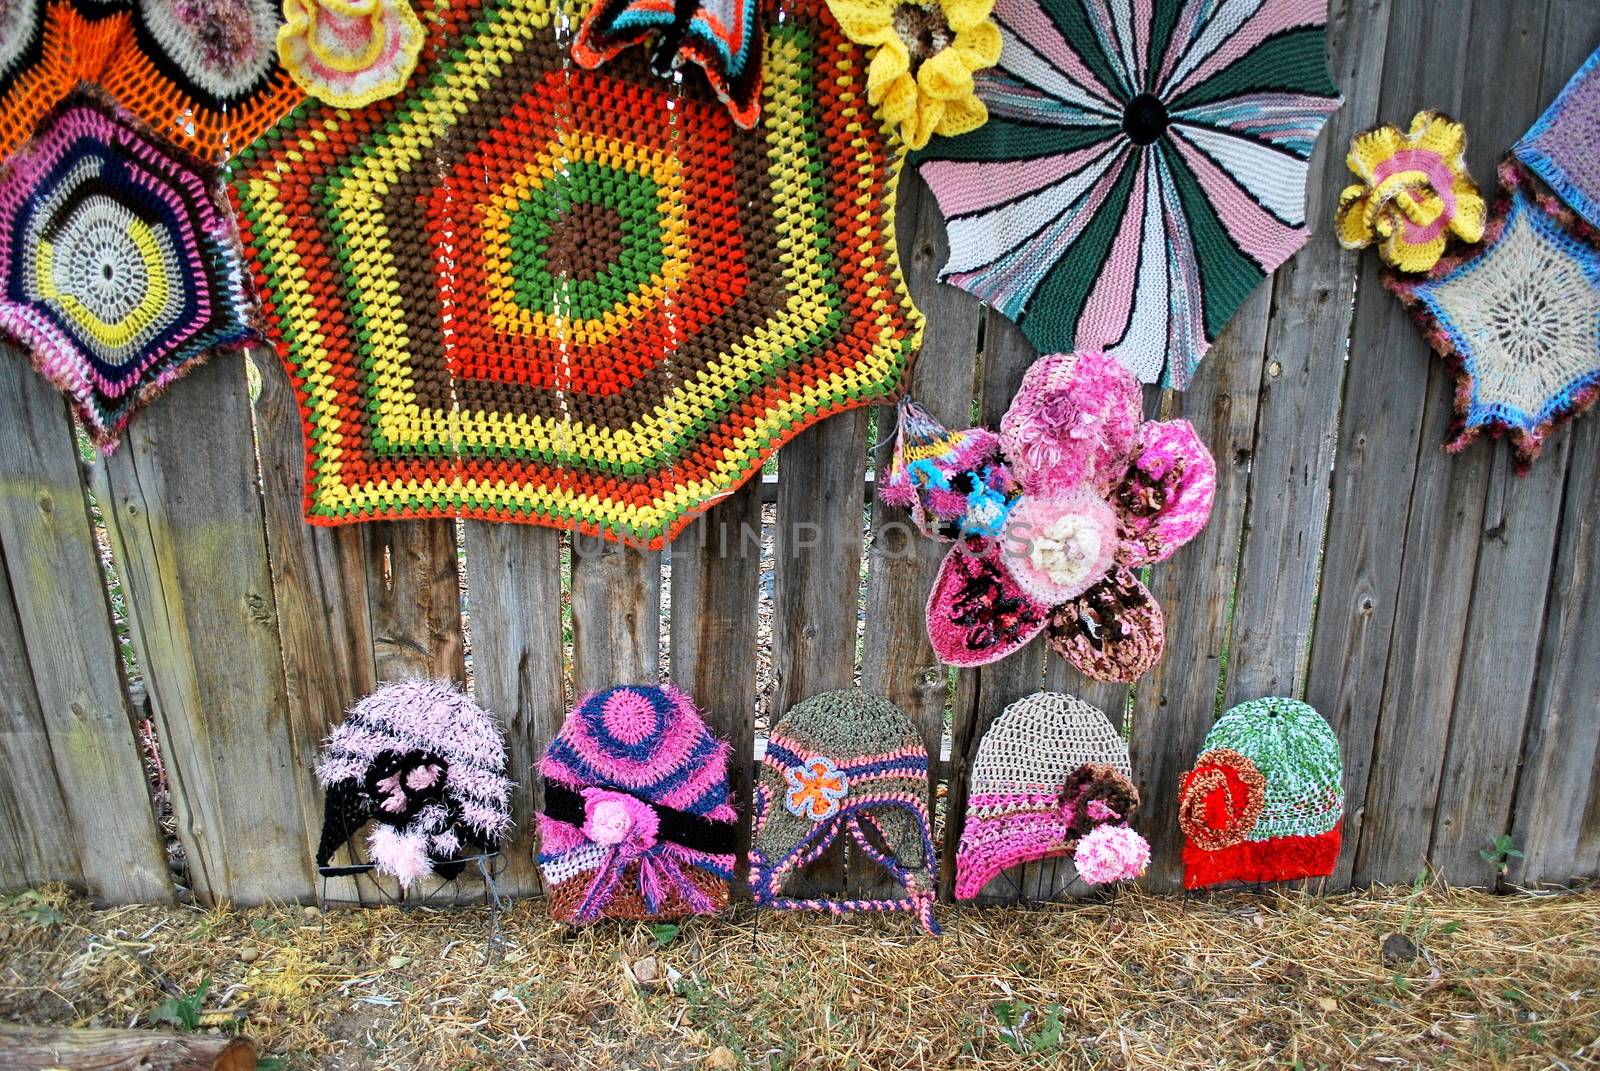 Crochet designs. by oscarcwilliams